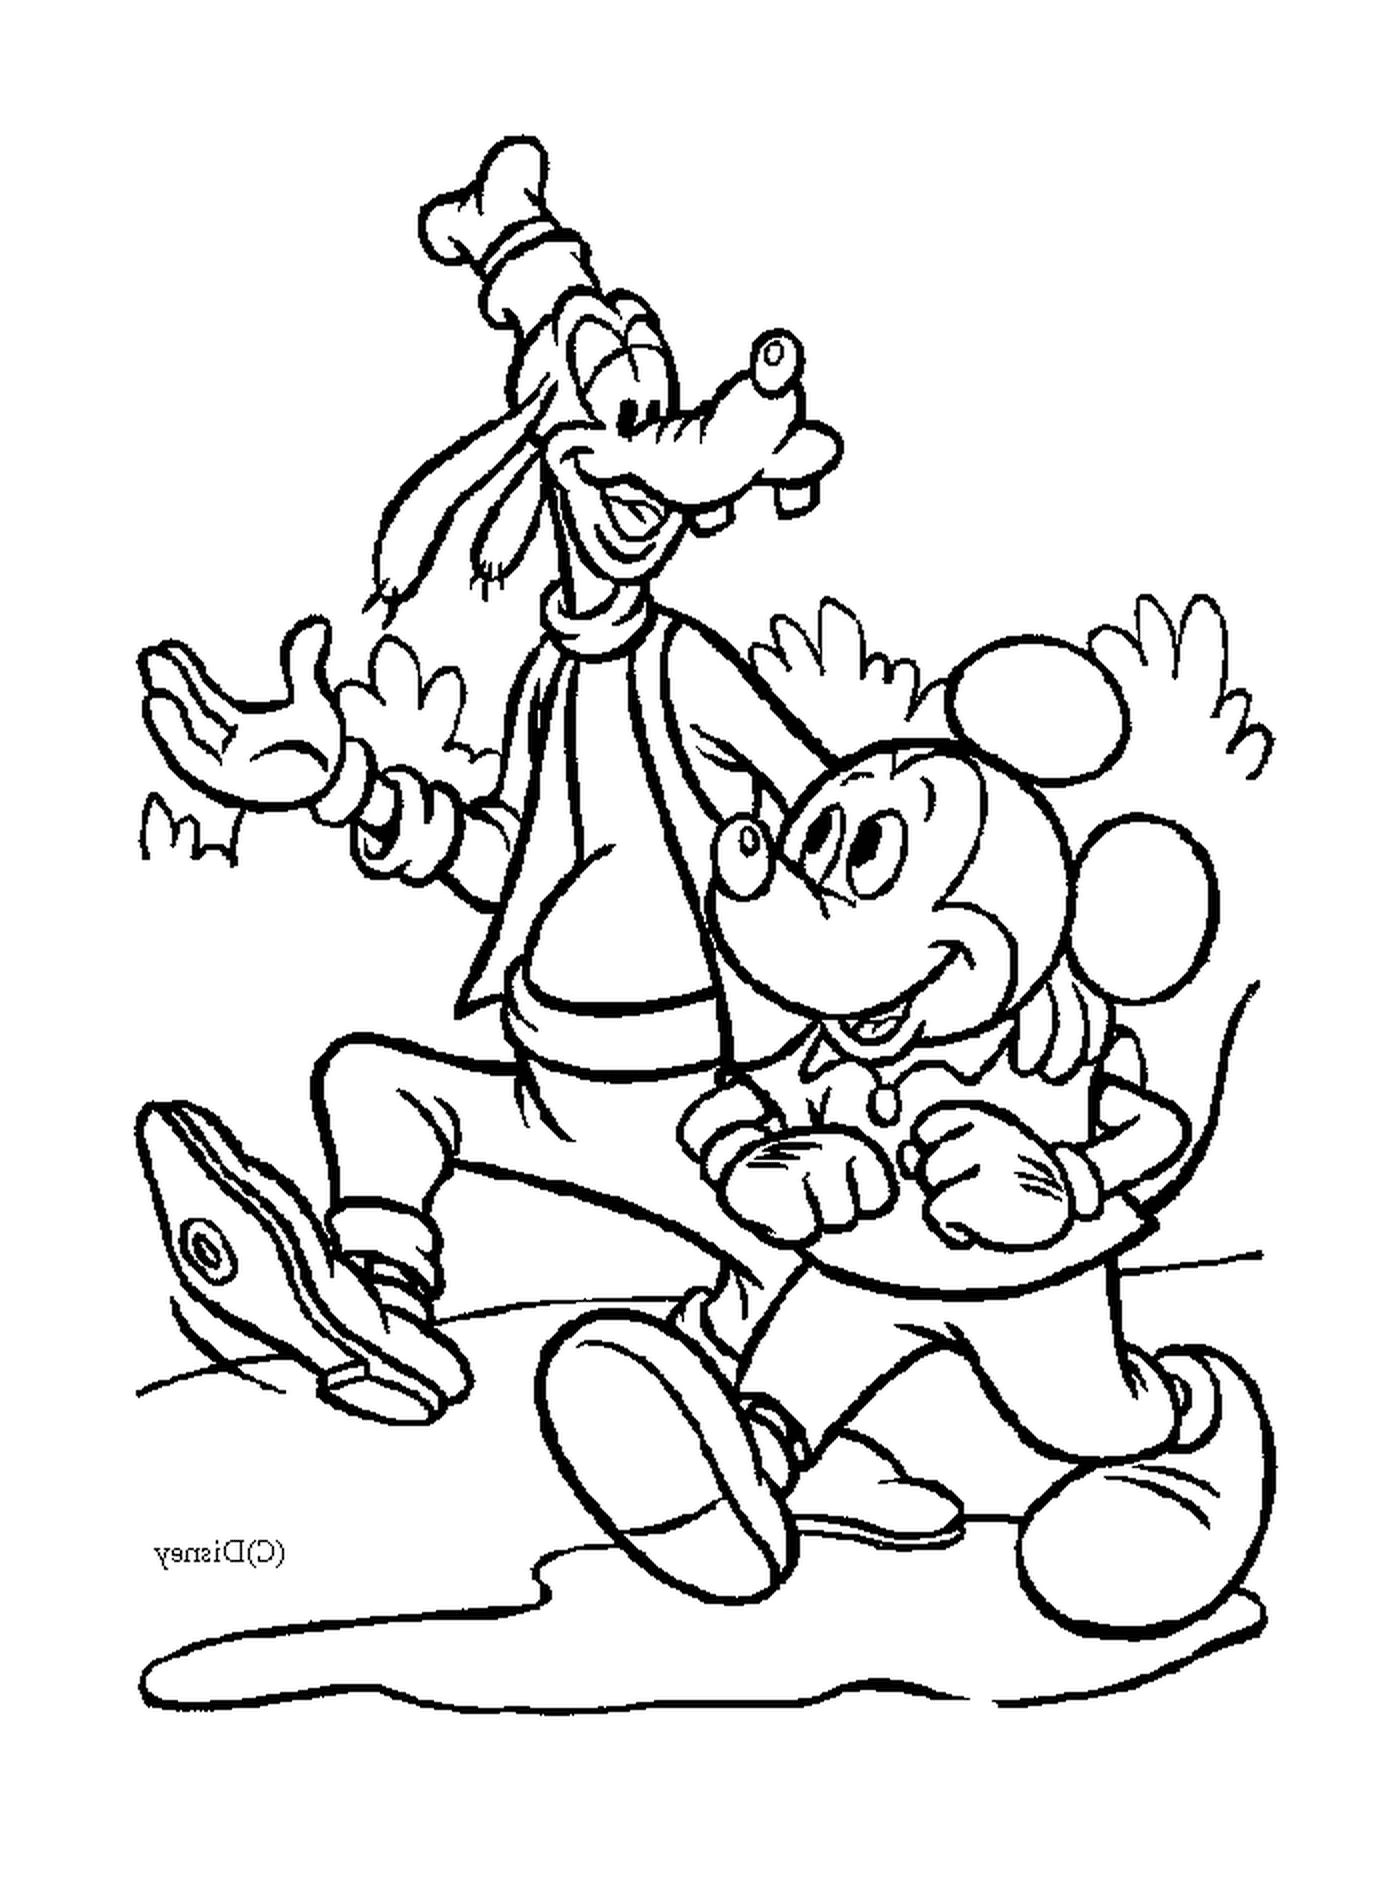  Mickey und sein Freund Dingo gehen: Mickey und Dingo 